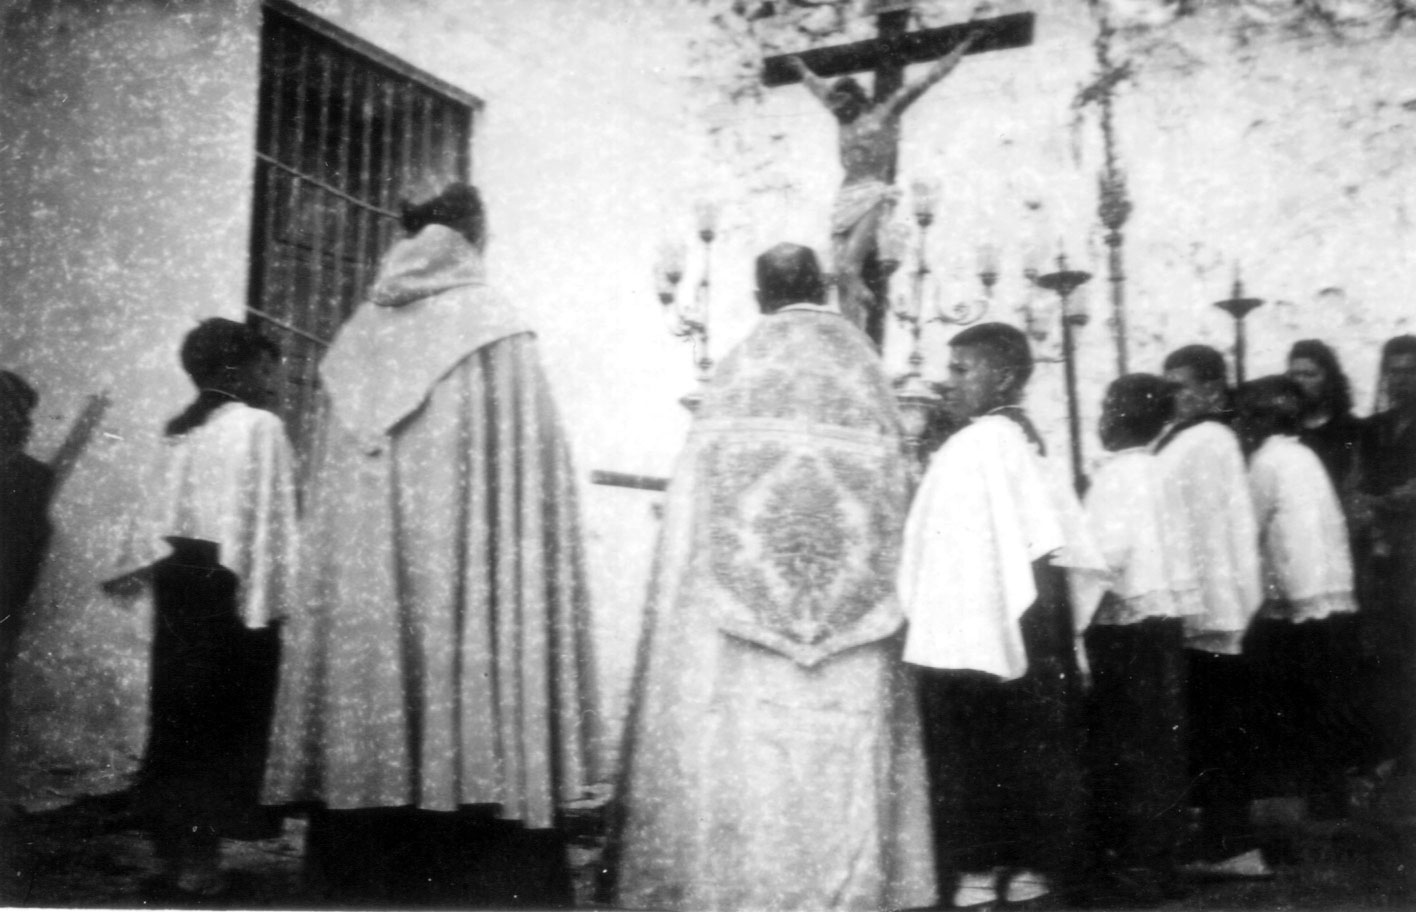 Cristo del Perdon y la buena muerte Godelleta 1945